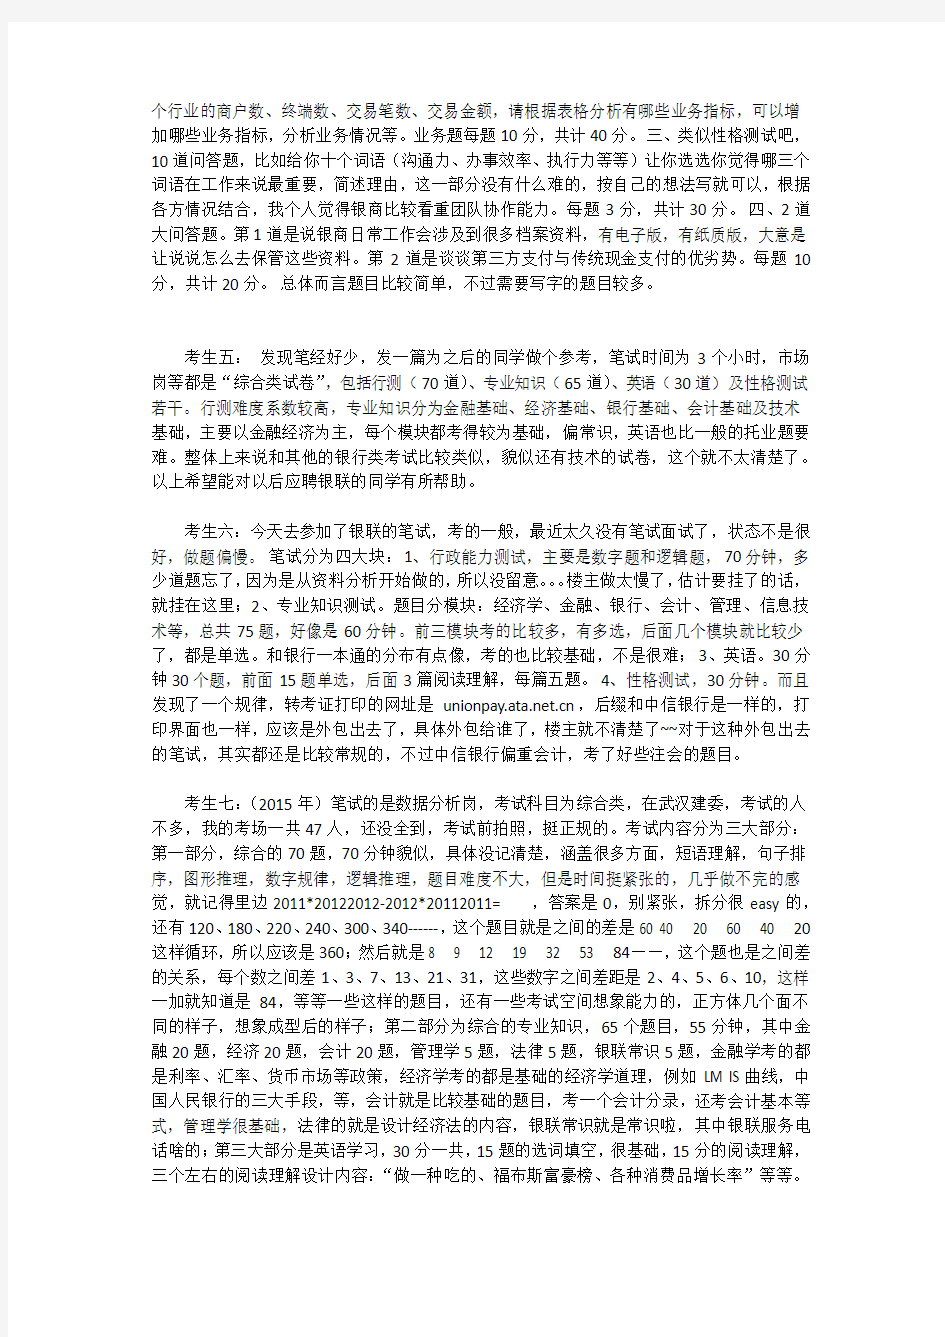 最新中国银联校园招聘考试笔试历年真题试卷汇编下载及知识点分析